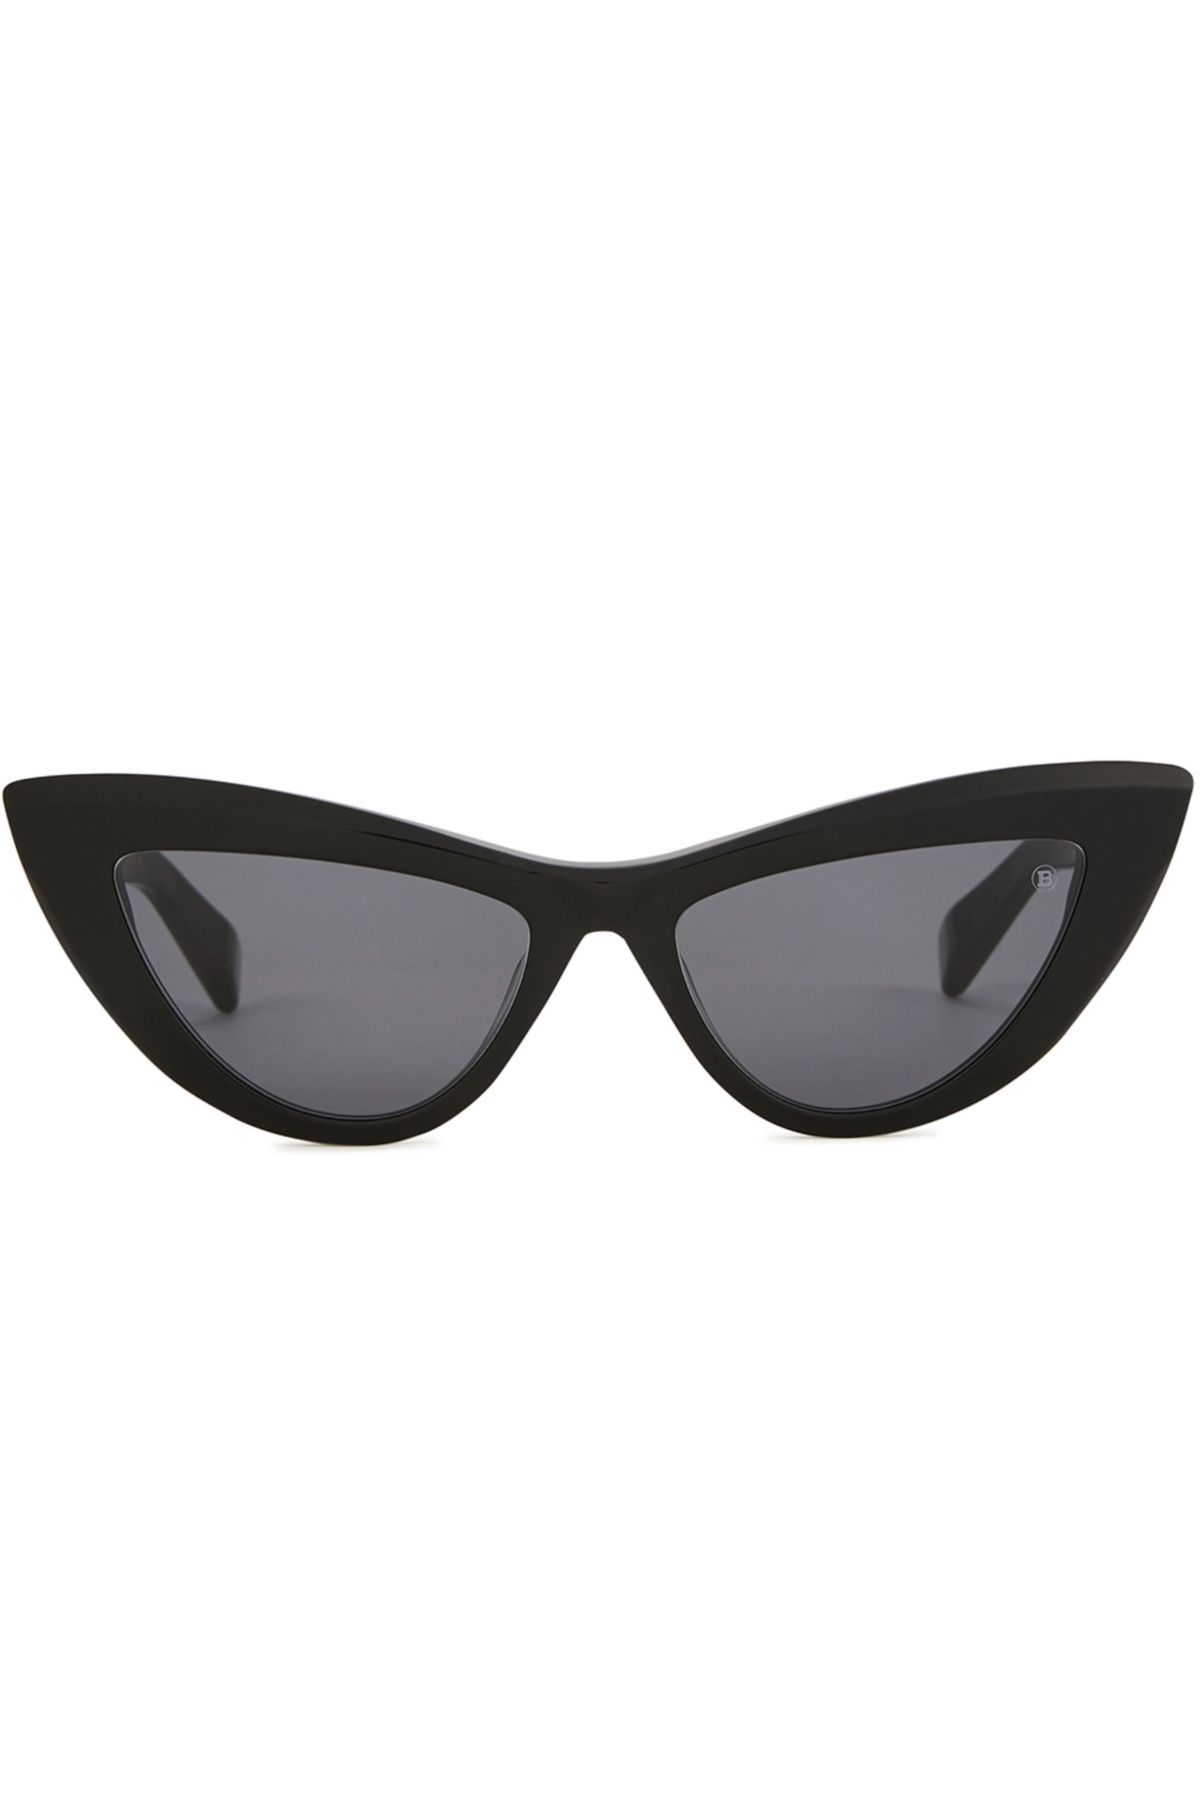 BALMAIN Jolie Cat-eye Sunglasses